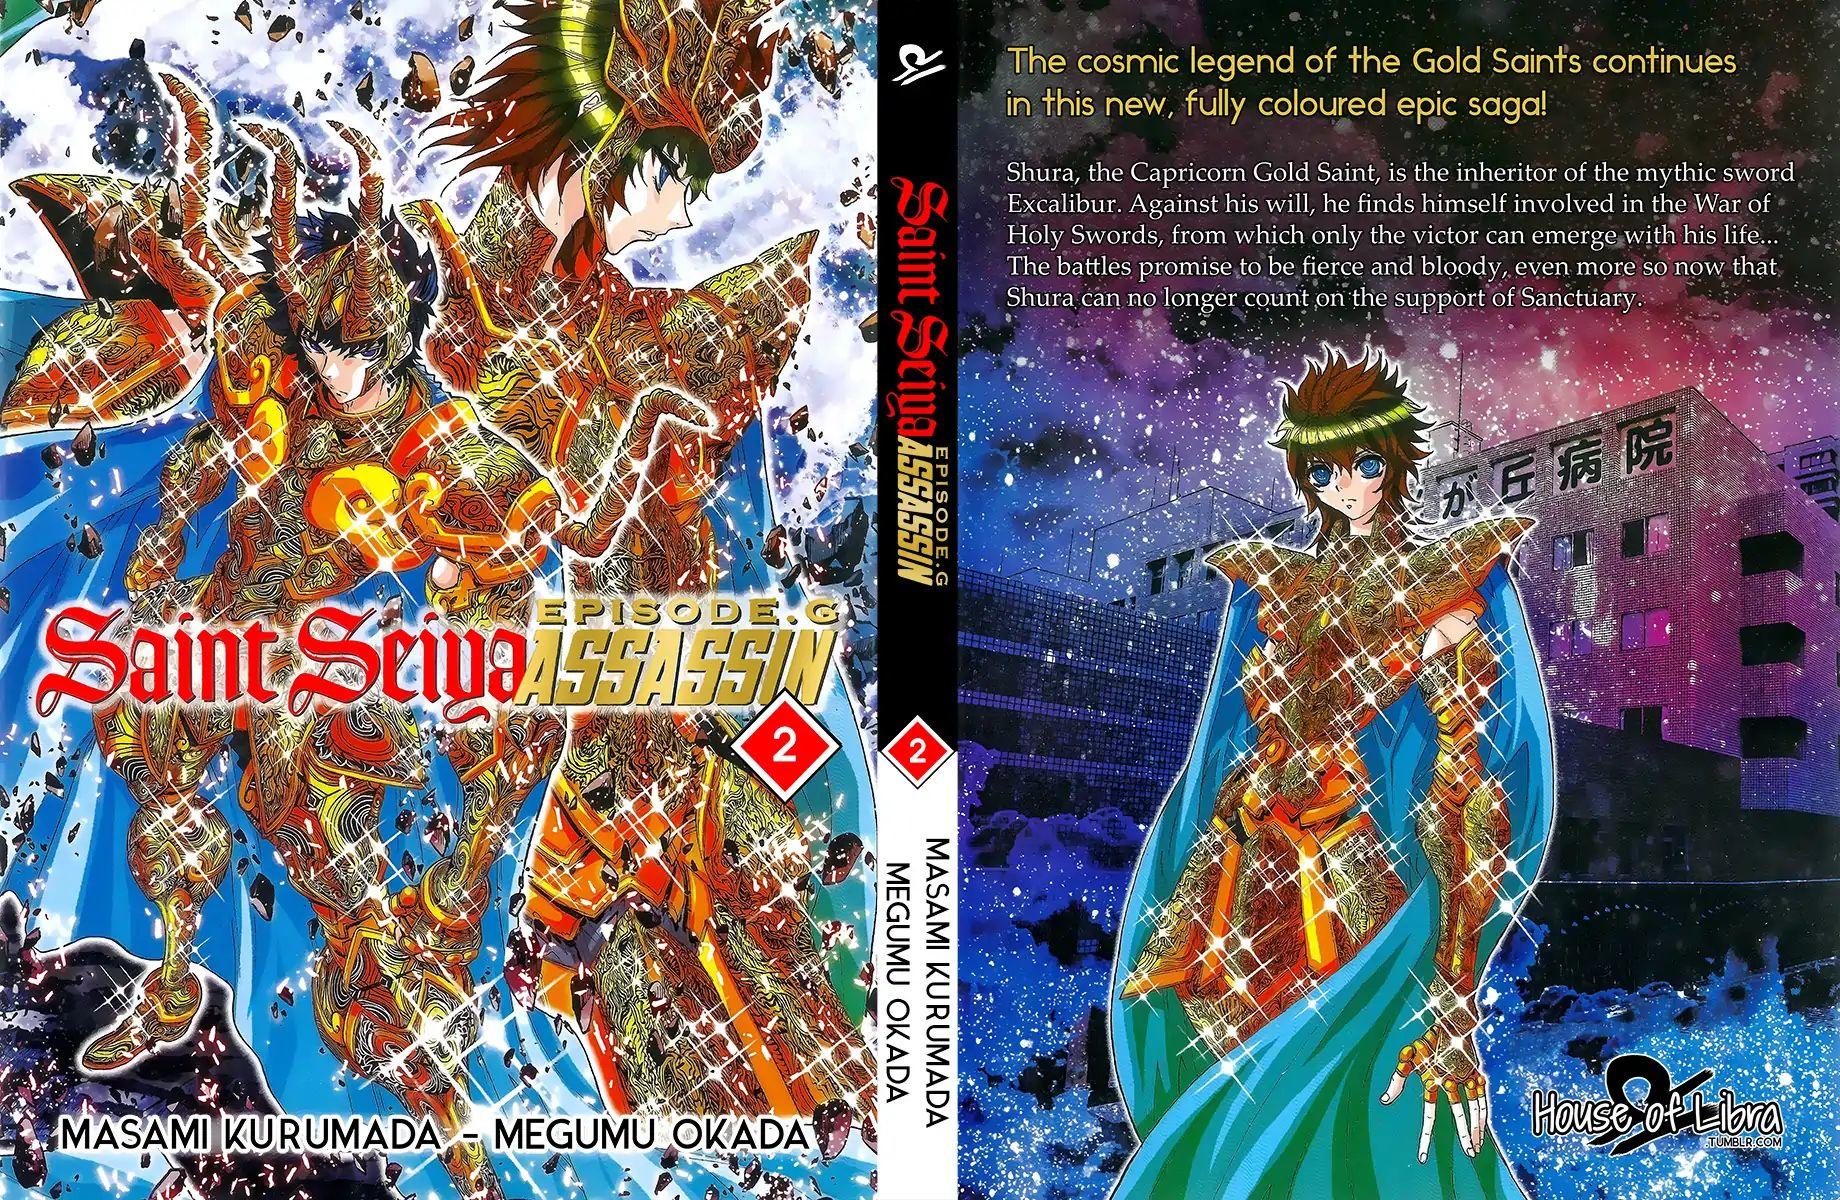 Read Saint Seiya Episode G Assassin Chapter 3 9 Online For Free Mangarock Cyou